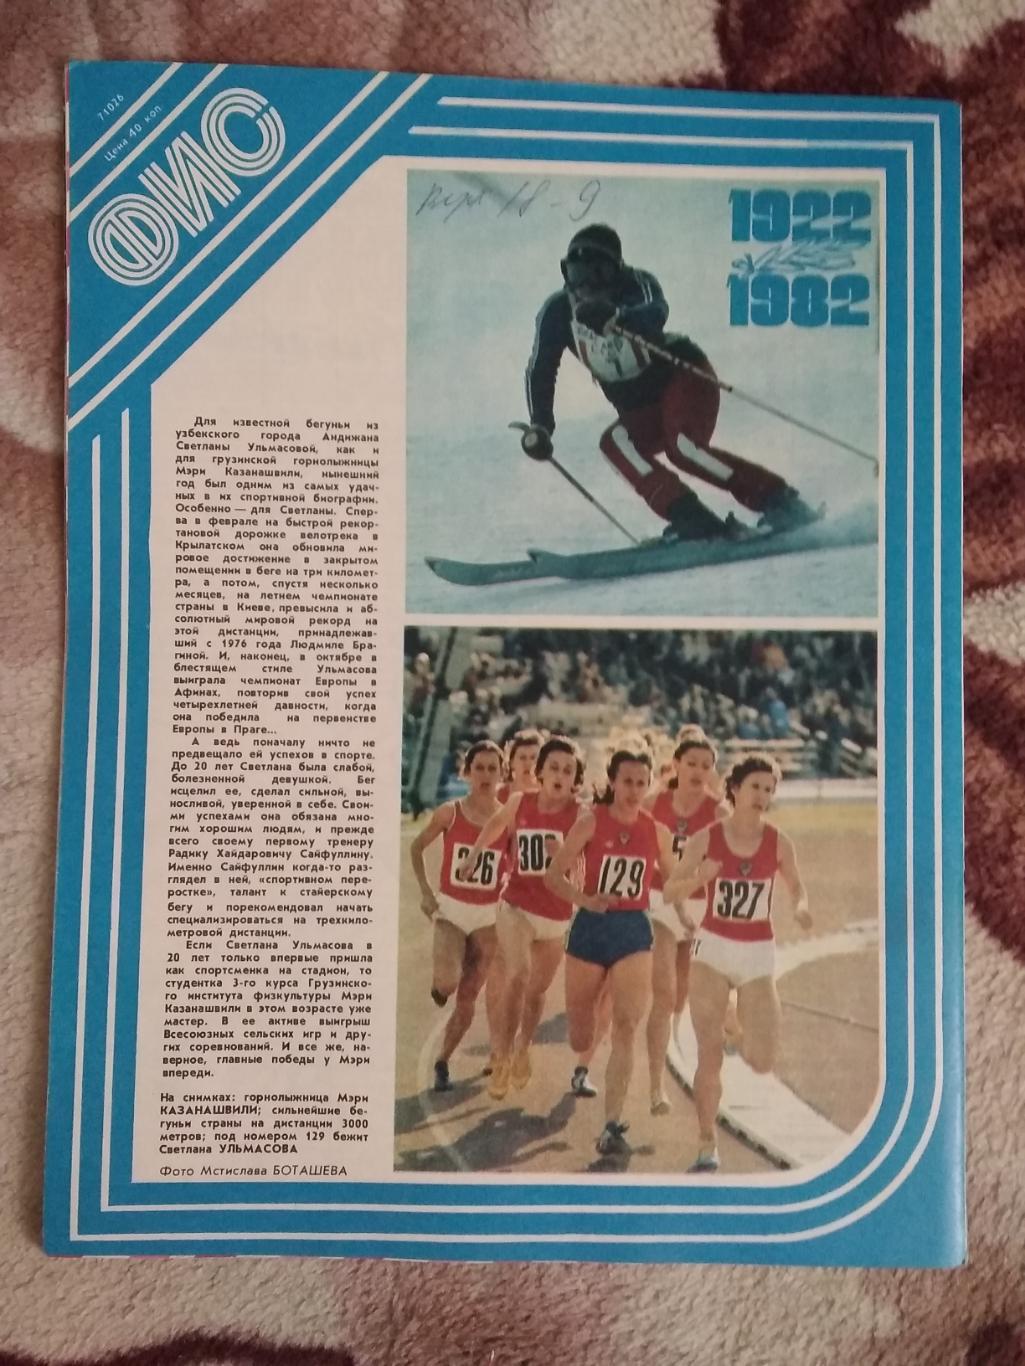 Журнал.Физкультура и спорт № 11 1982 г. (ФиС). 2